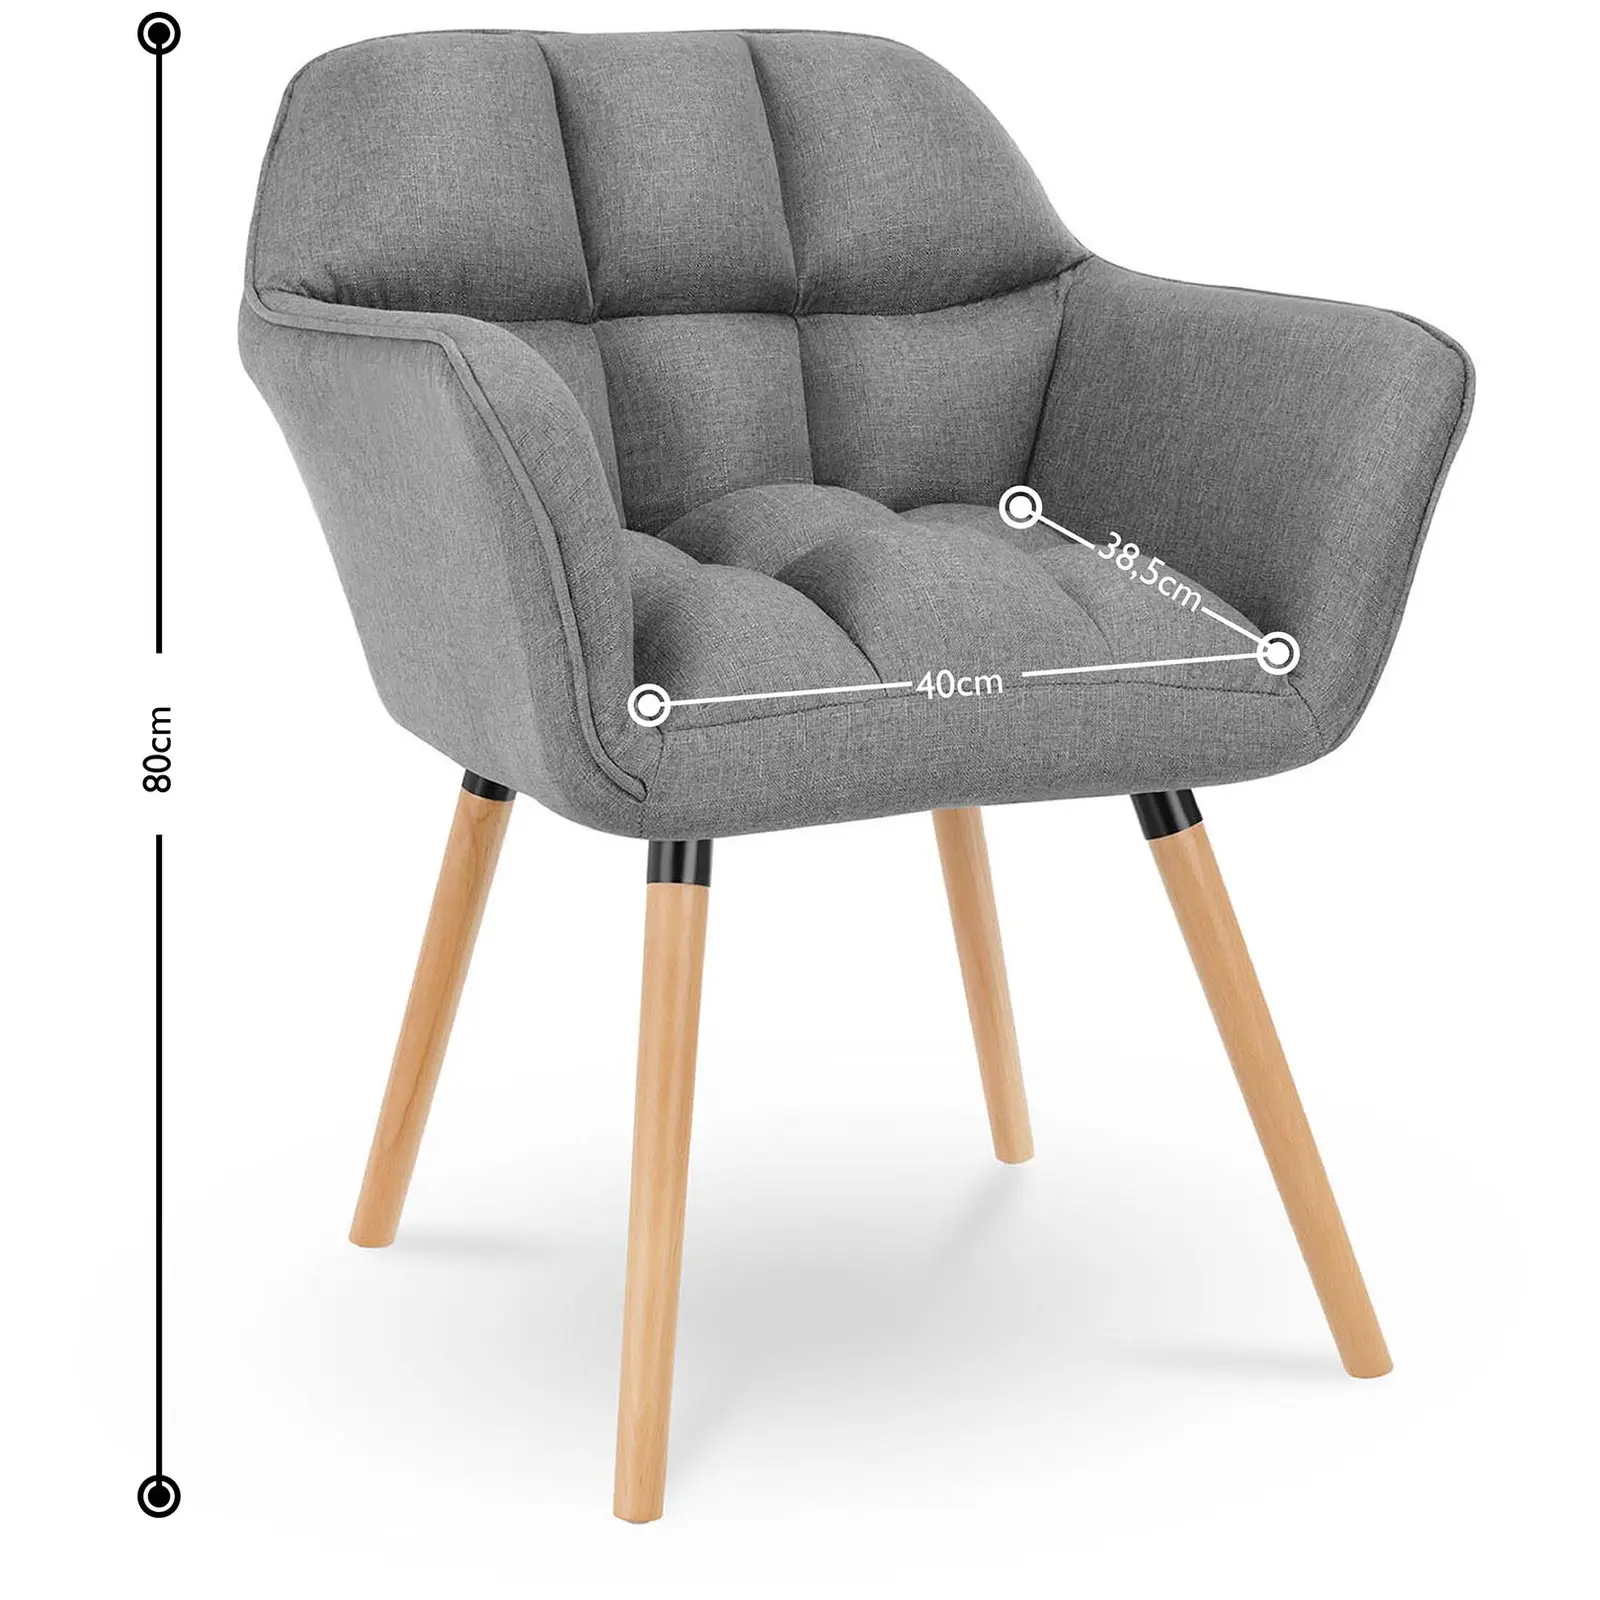 Chaise en tissu - 150 kg max. - Surface d'assise de 40 x 38,5 cm - Coloris gris